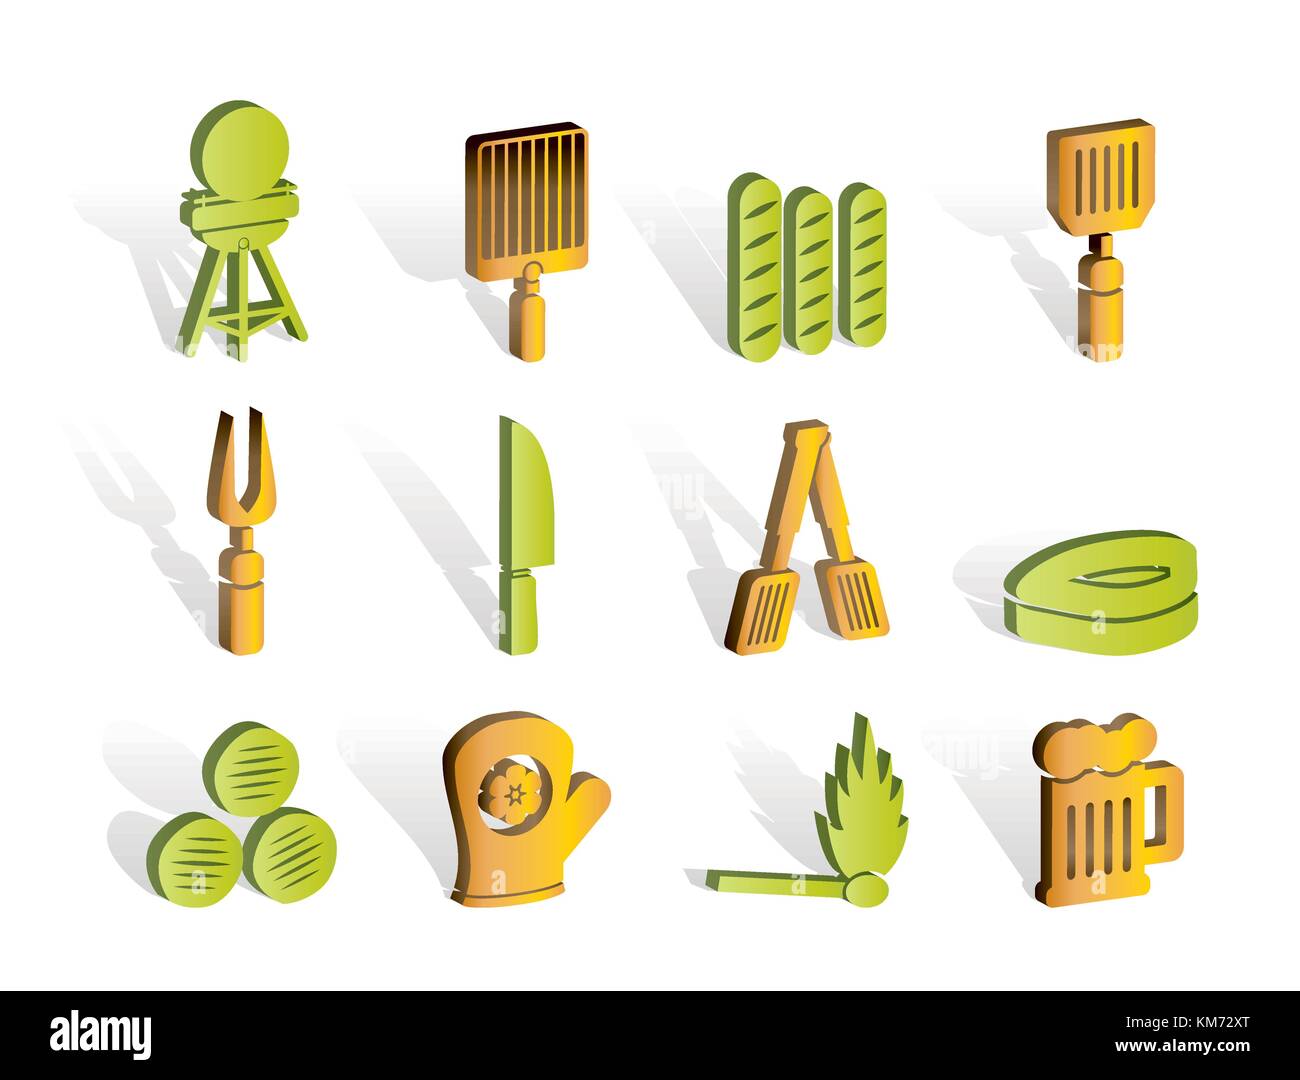 Pique-nique, barbecue et grill icônes - vector icon set Illustration de Vecteur